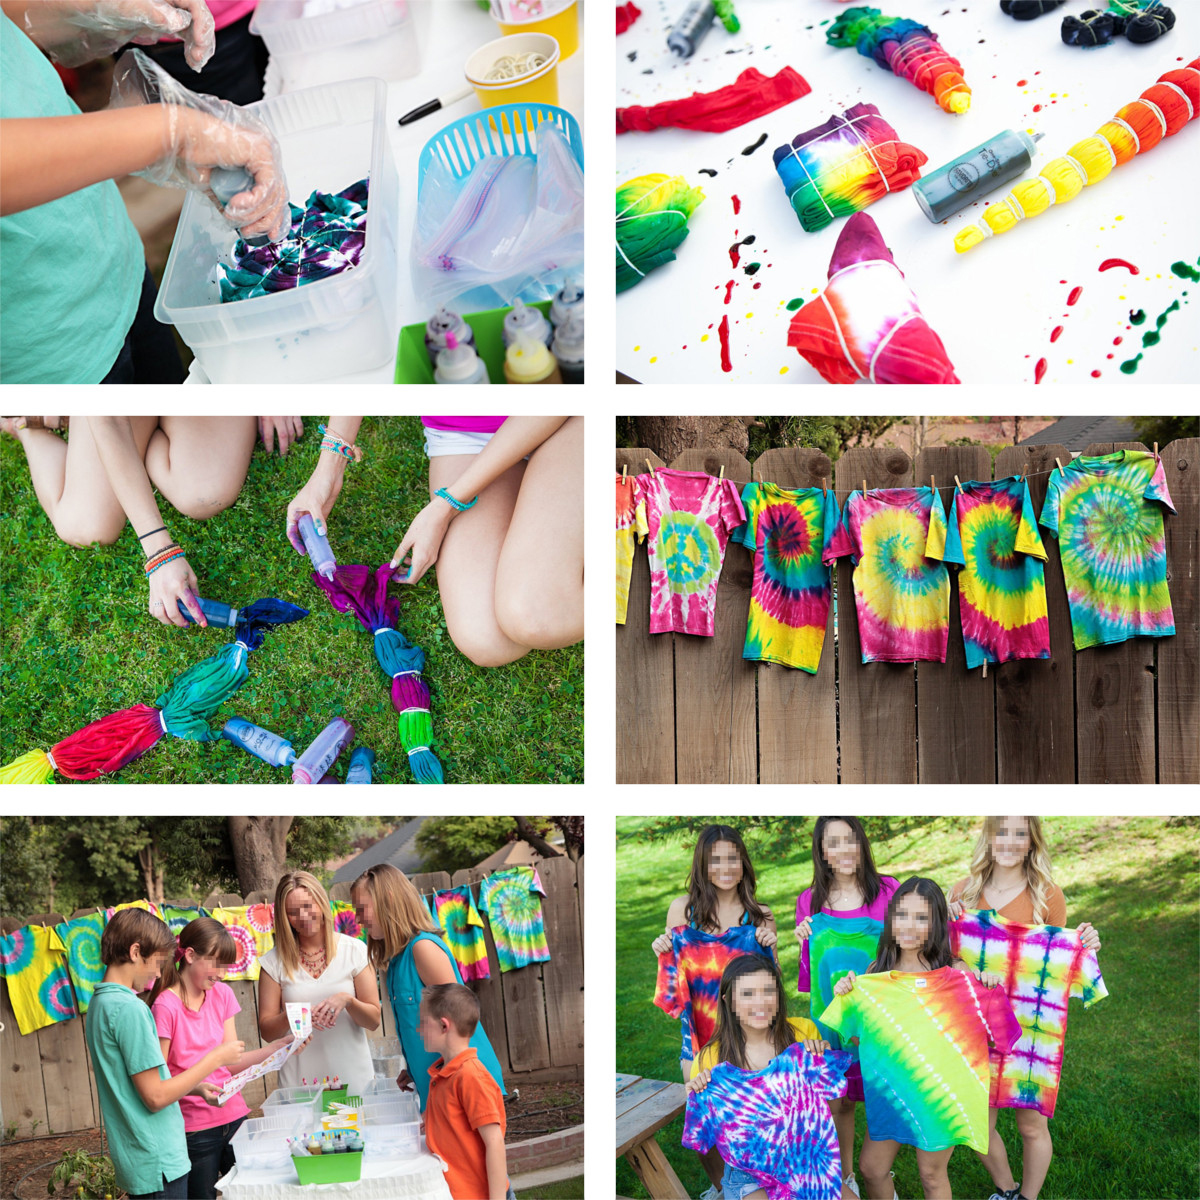 Tie-Dye-DIY-Kit-5-Colors-Fabric-Textile-Shirts-Paints-Permanent-Paint-for-Clothes-Shirt-Dress-Homema-1906746-12